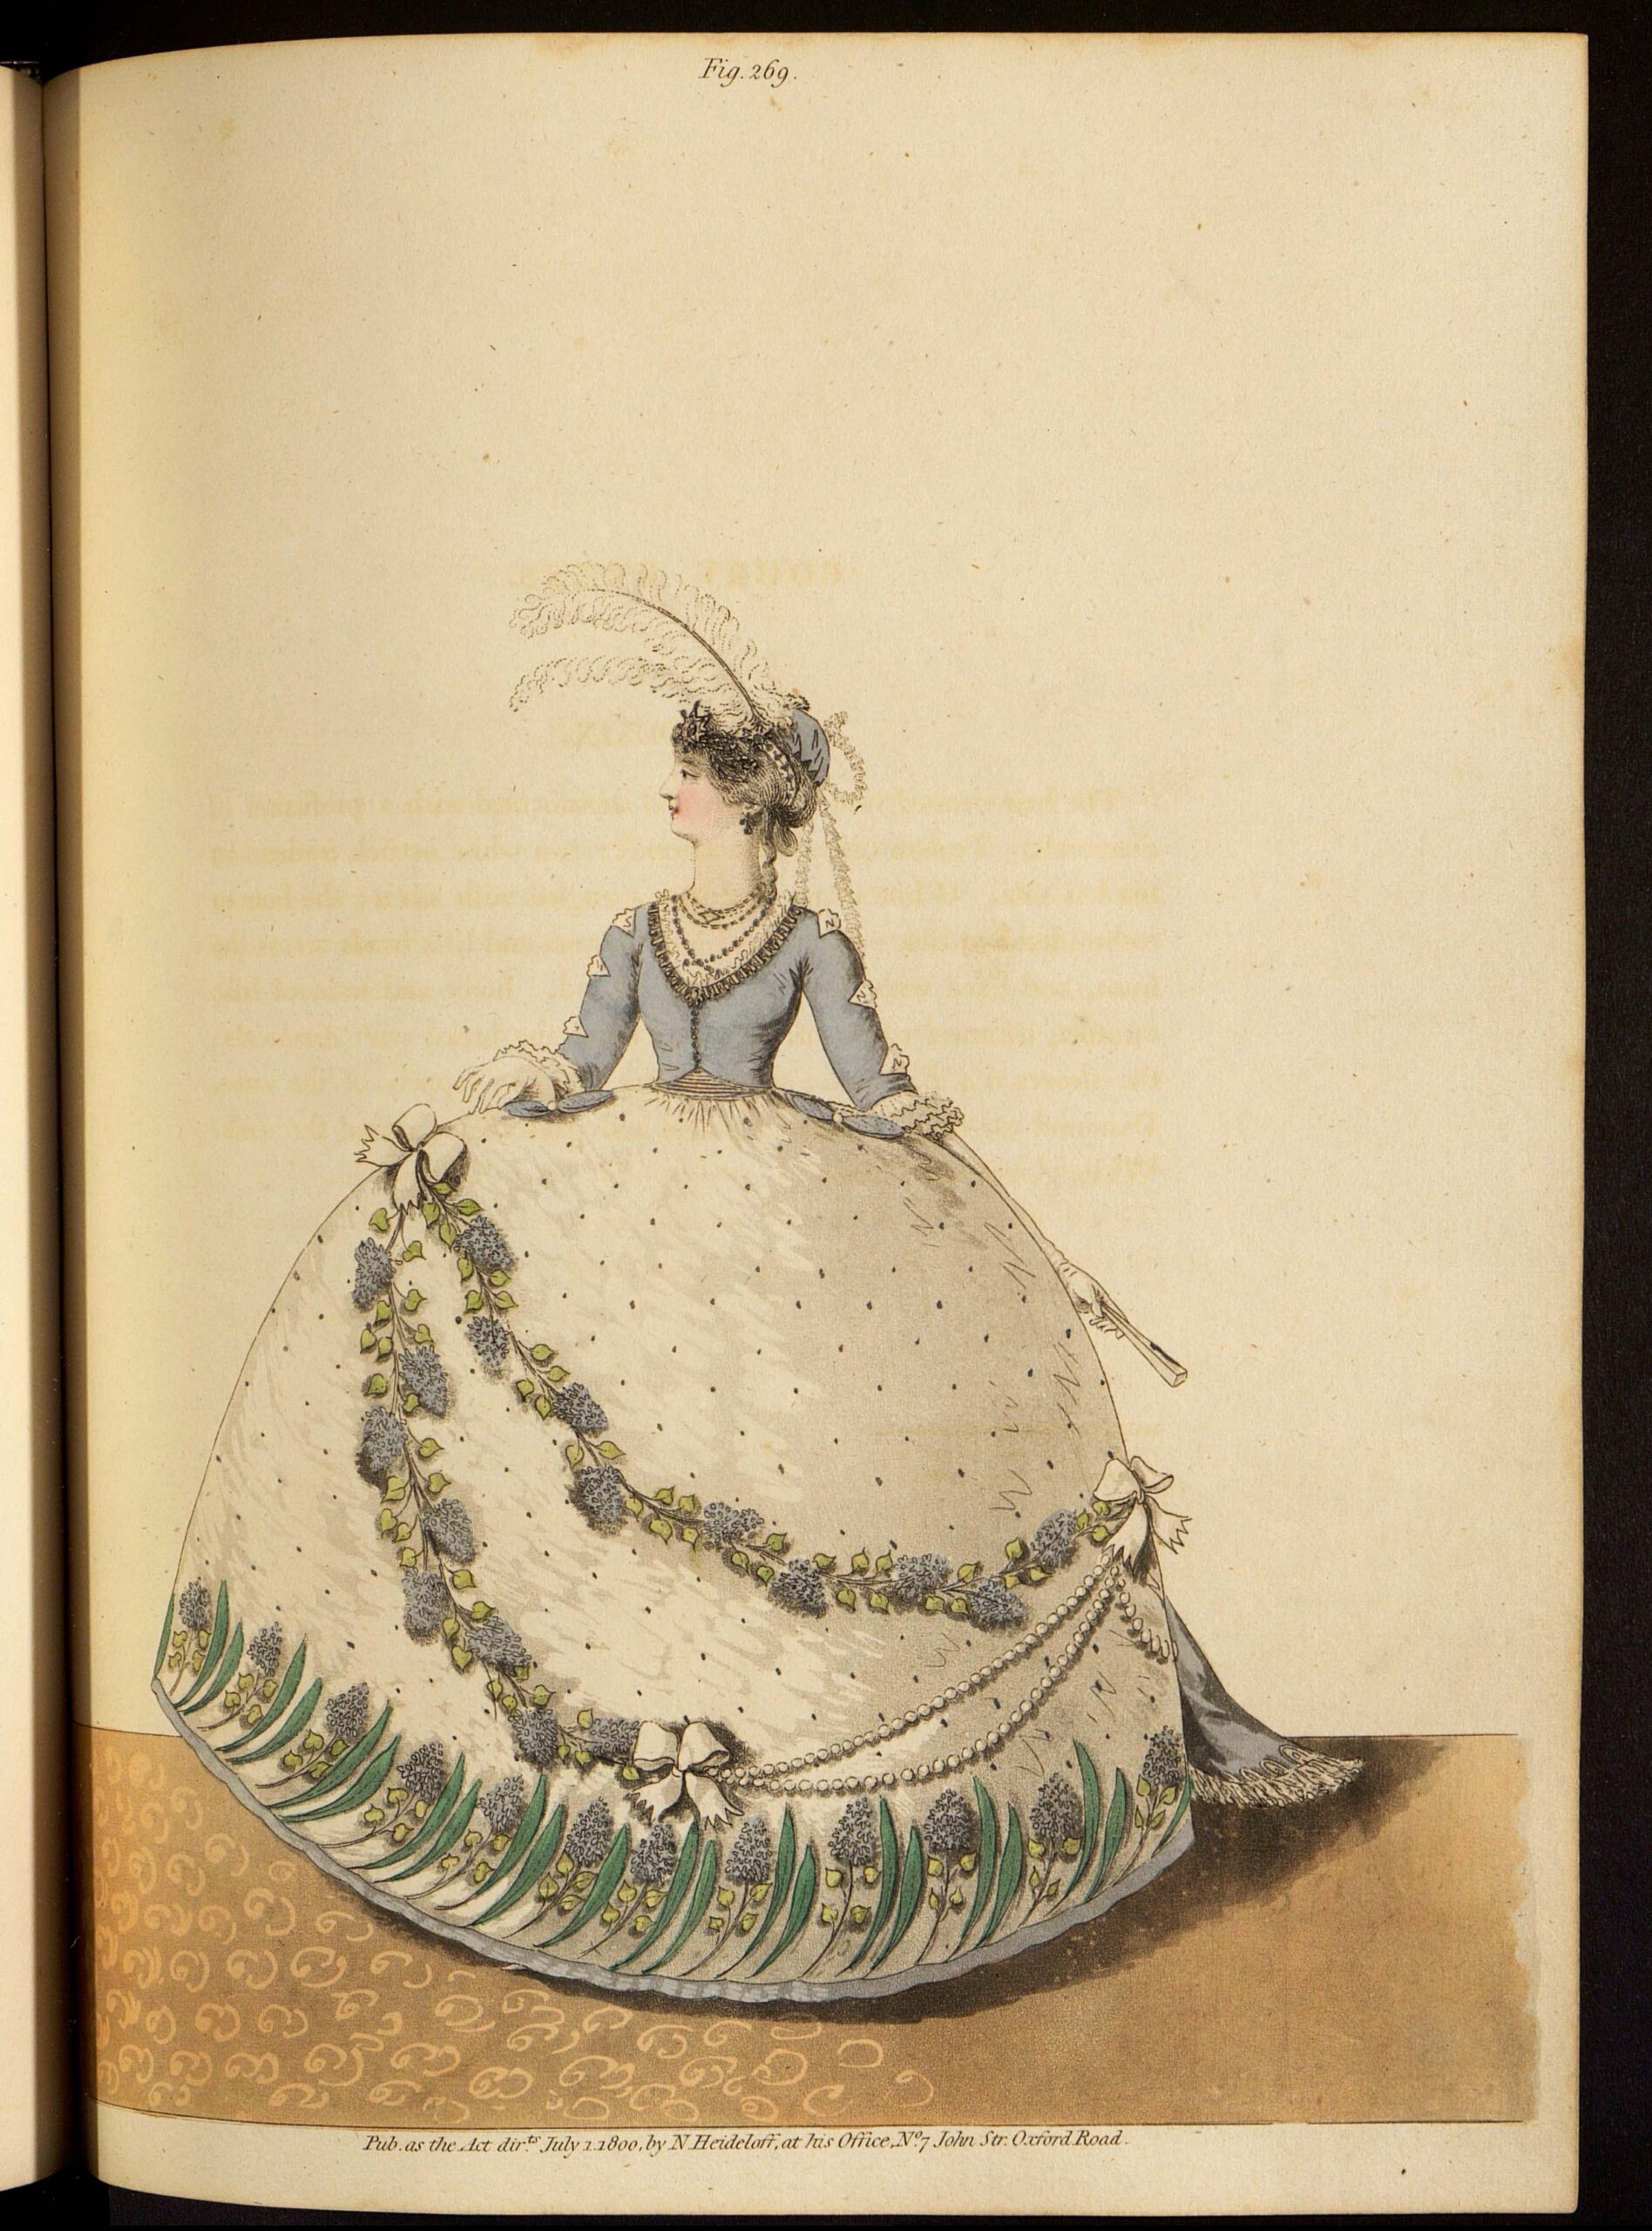 Придворное платье. Лист из журнала «Gallery of fashion»Великобритания, 1800 г.